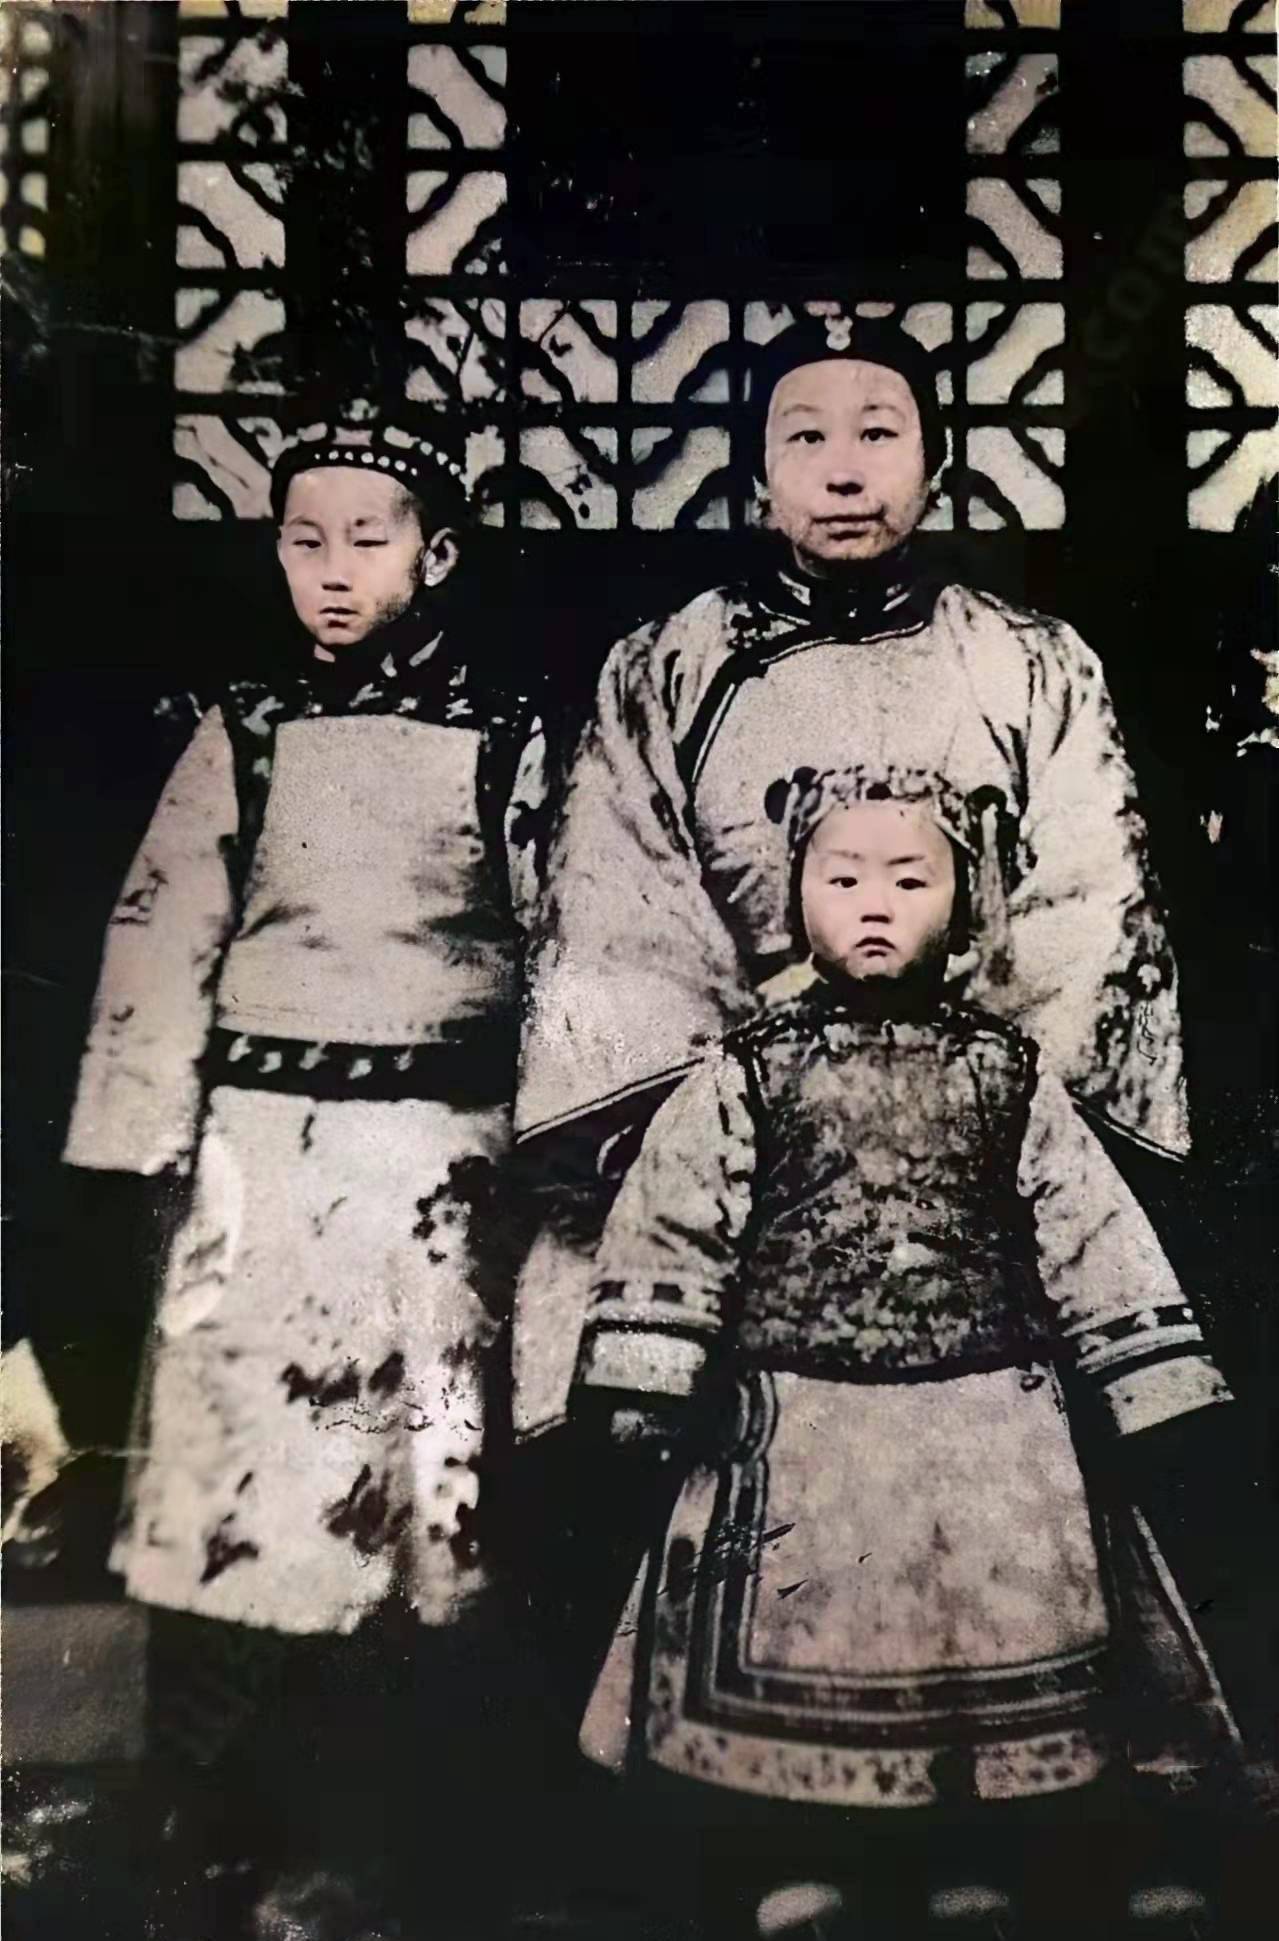 清朝末年拍摄的照片,照片中坐着的妇女是李鸿章的二女儿李菊藕,站在她